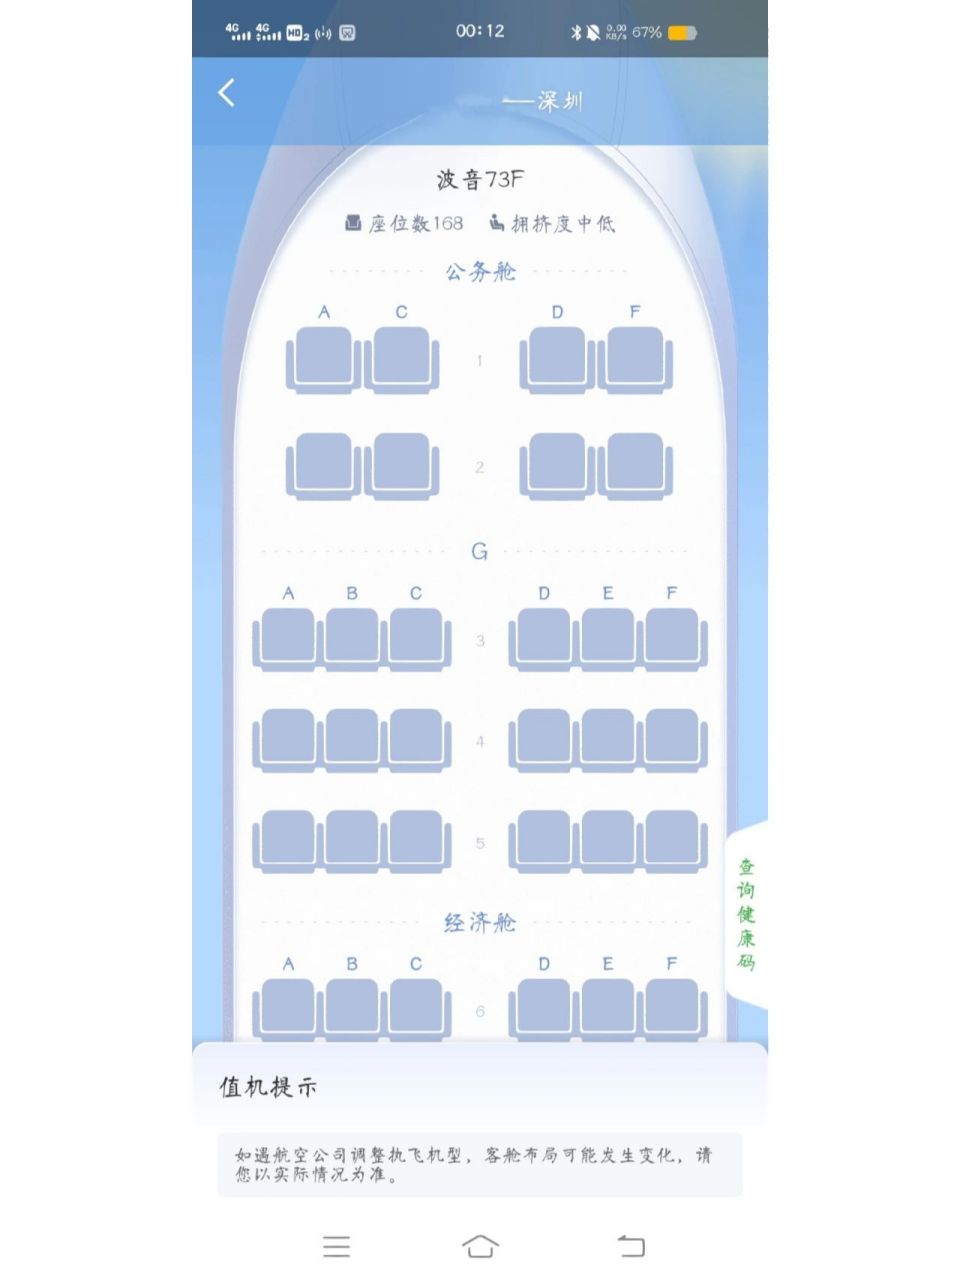 深圳航空zh座位图22排图片